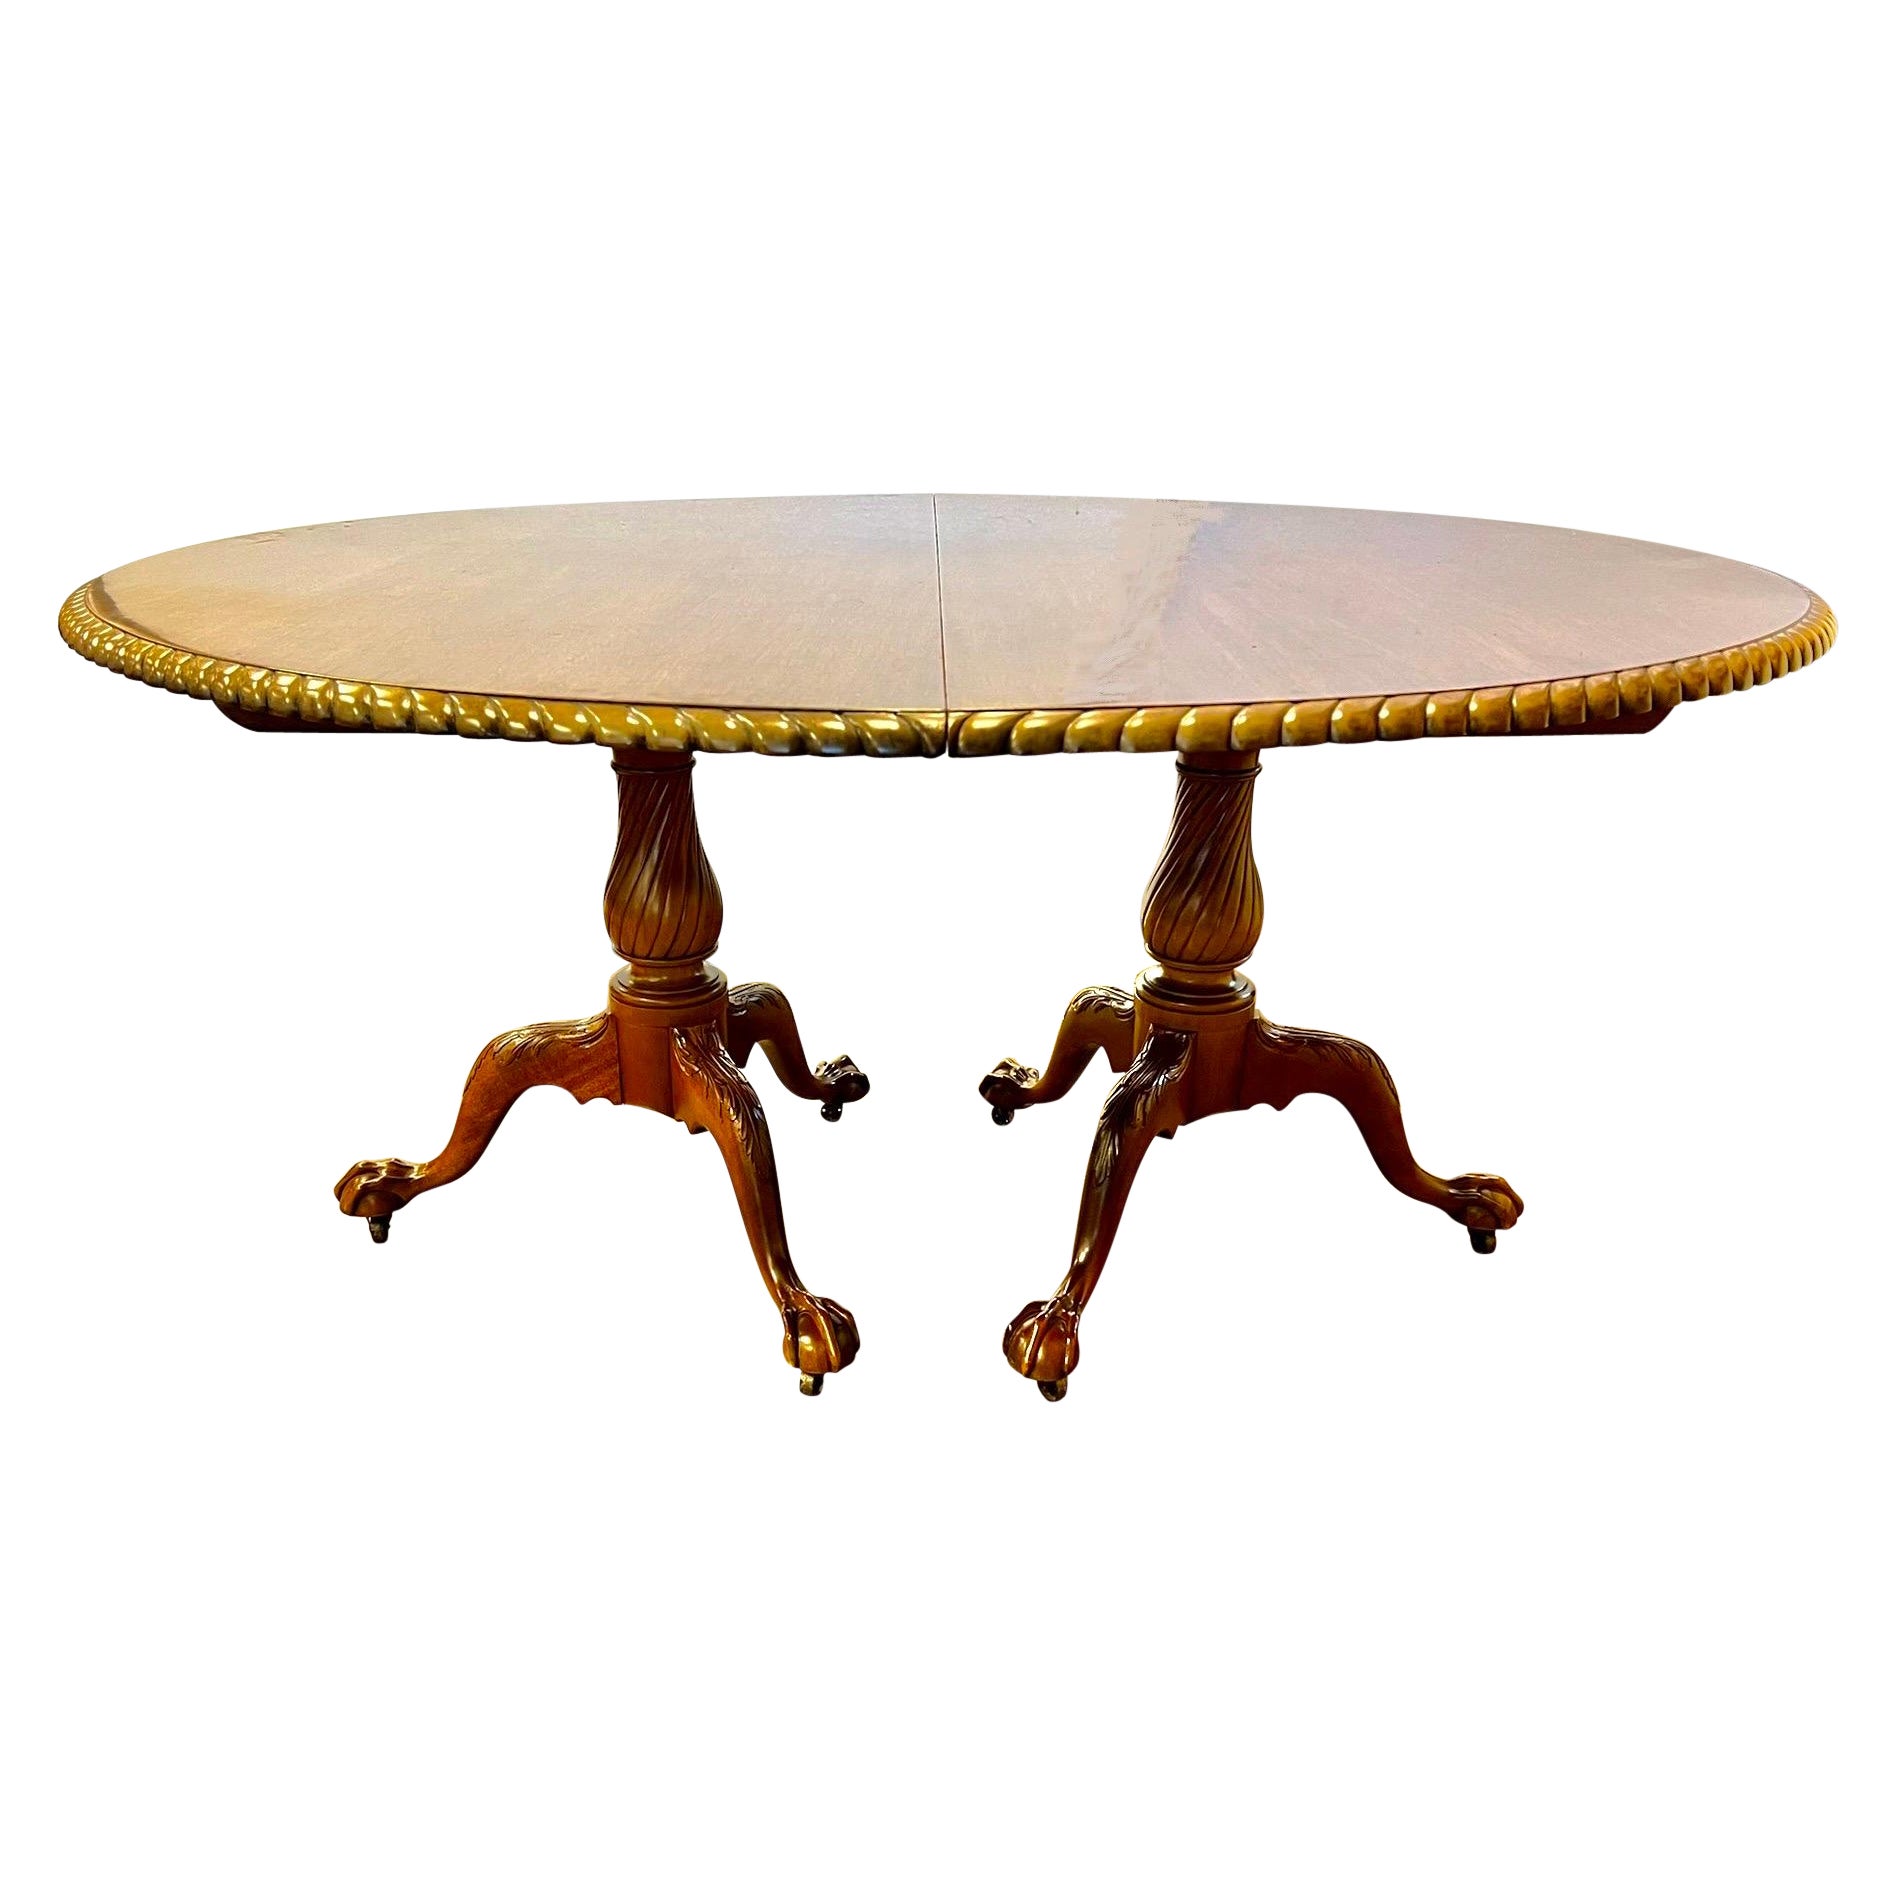 Antique Margolis Round Expandable Mahogany Dining Table to Ninety Six Inches